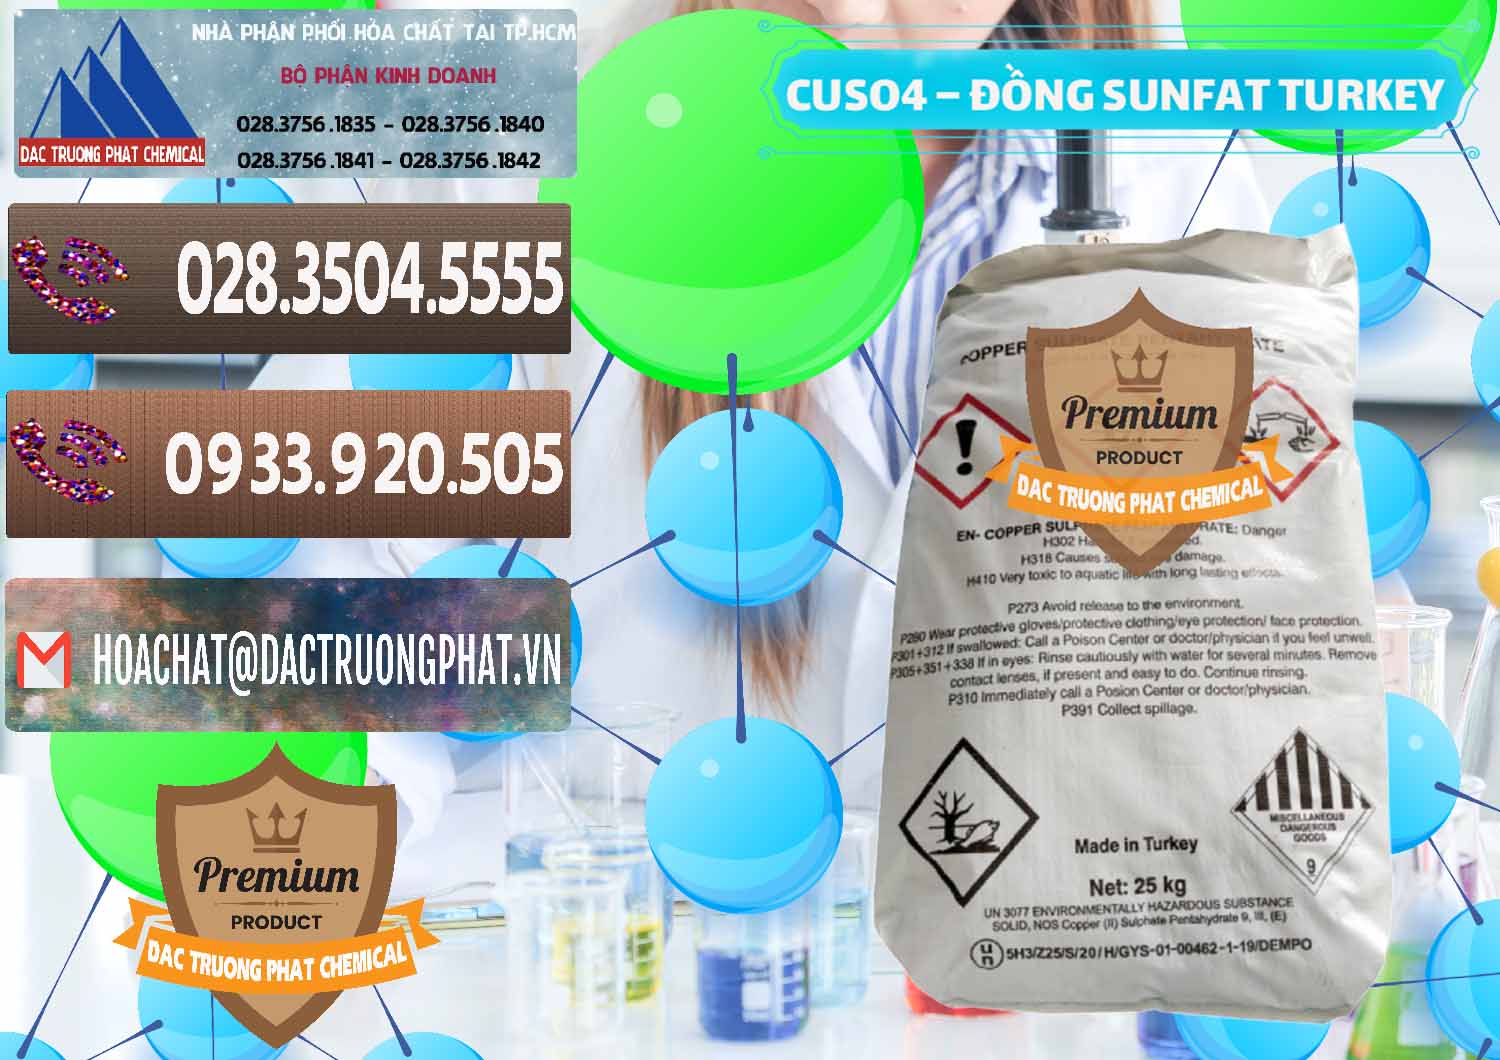 Công ty chuyên nhập khẩu & bán CuSO4 – Đồng Sunfat Thổ Nhĩ Kỳ Turkey - 0481 - Đơn vị chuyên bán - phân phối hóa chất tại TP.HCM - hoachatviet.net